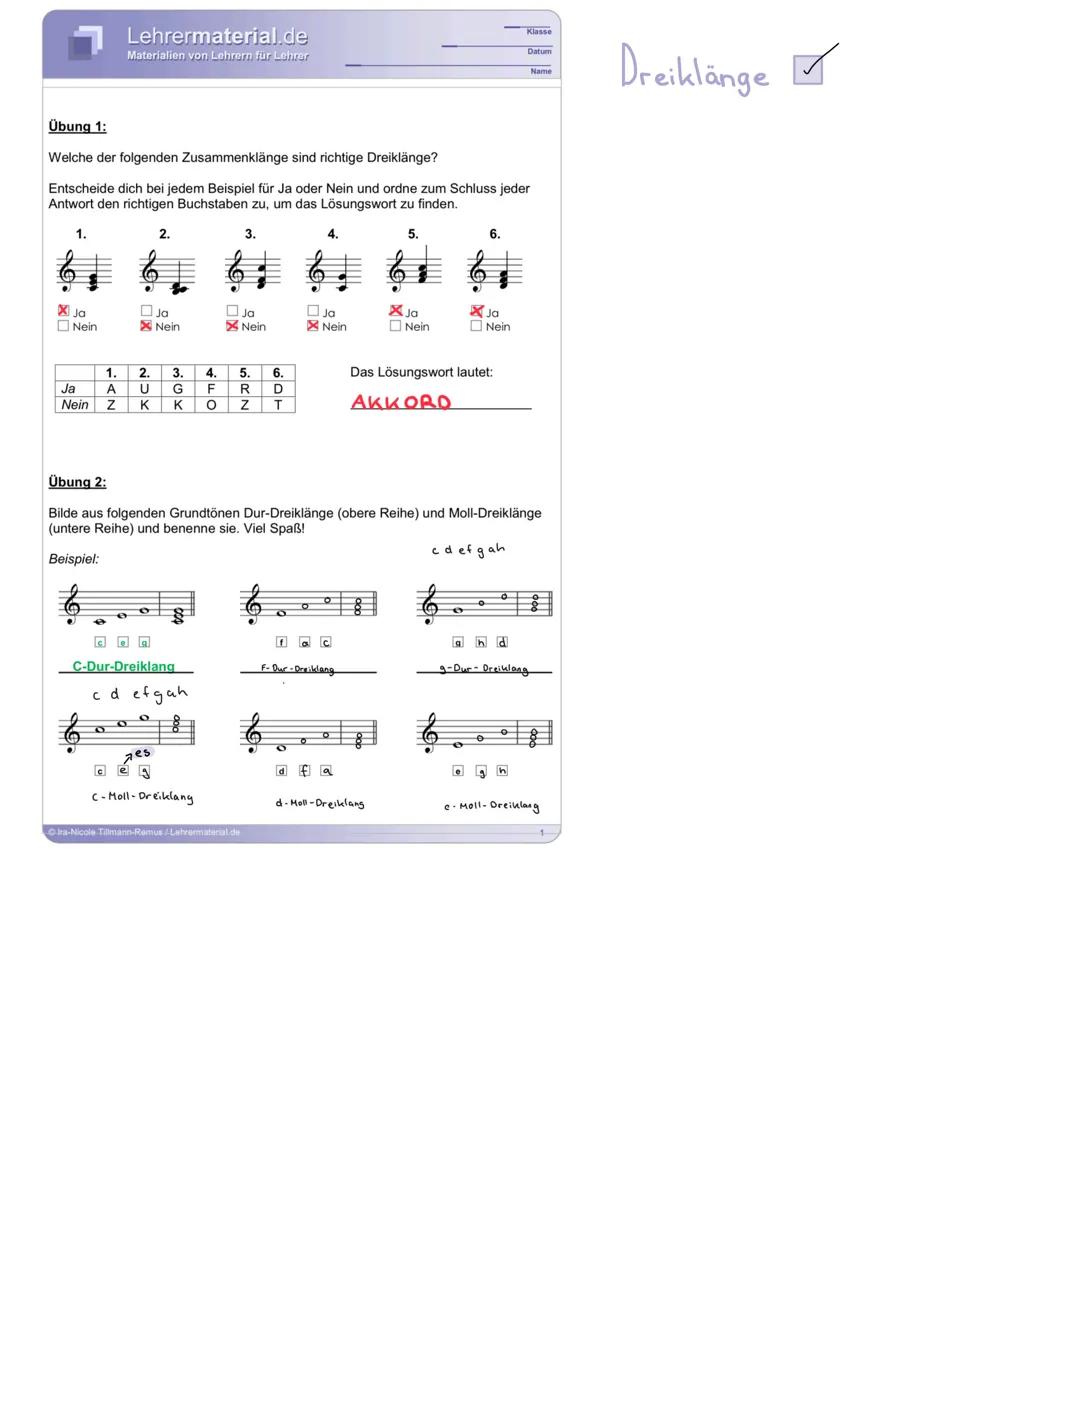 Man
Dur
Dreiklange
Moll
Transposition
e-moll
Zwischen dem
A-Dur
Dur Tonleiter bestehen aus 8 Tönen
kann mit transpositionen ein lied
Tonleit